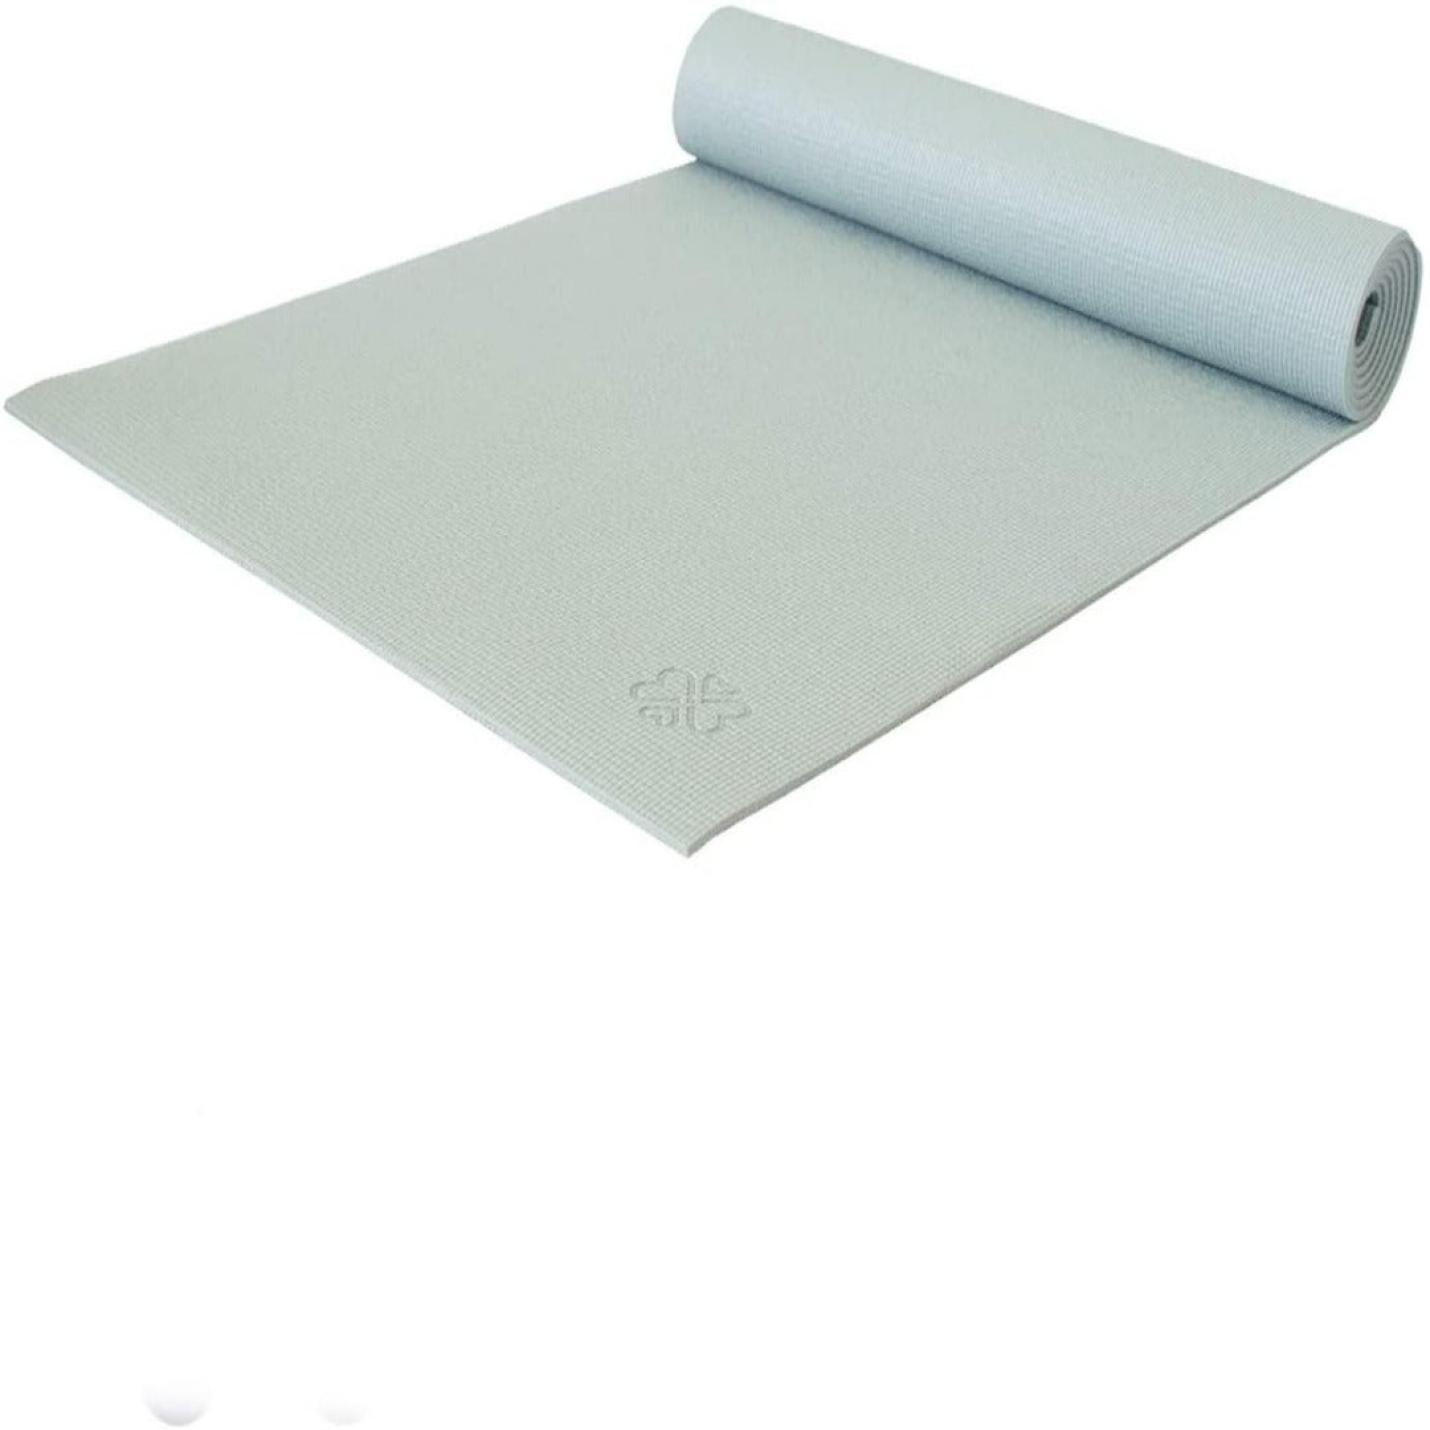 Yogamat met goede grip - geschikt voor alle yoga stijlen en fitness - 183 x 61 cm, 4 mm dik